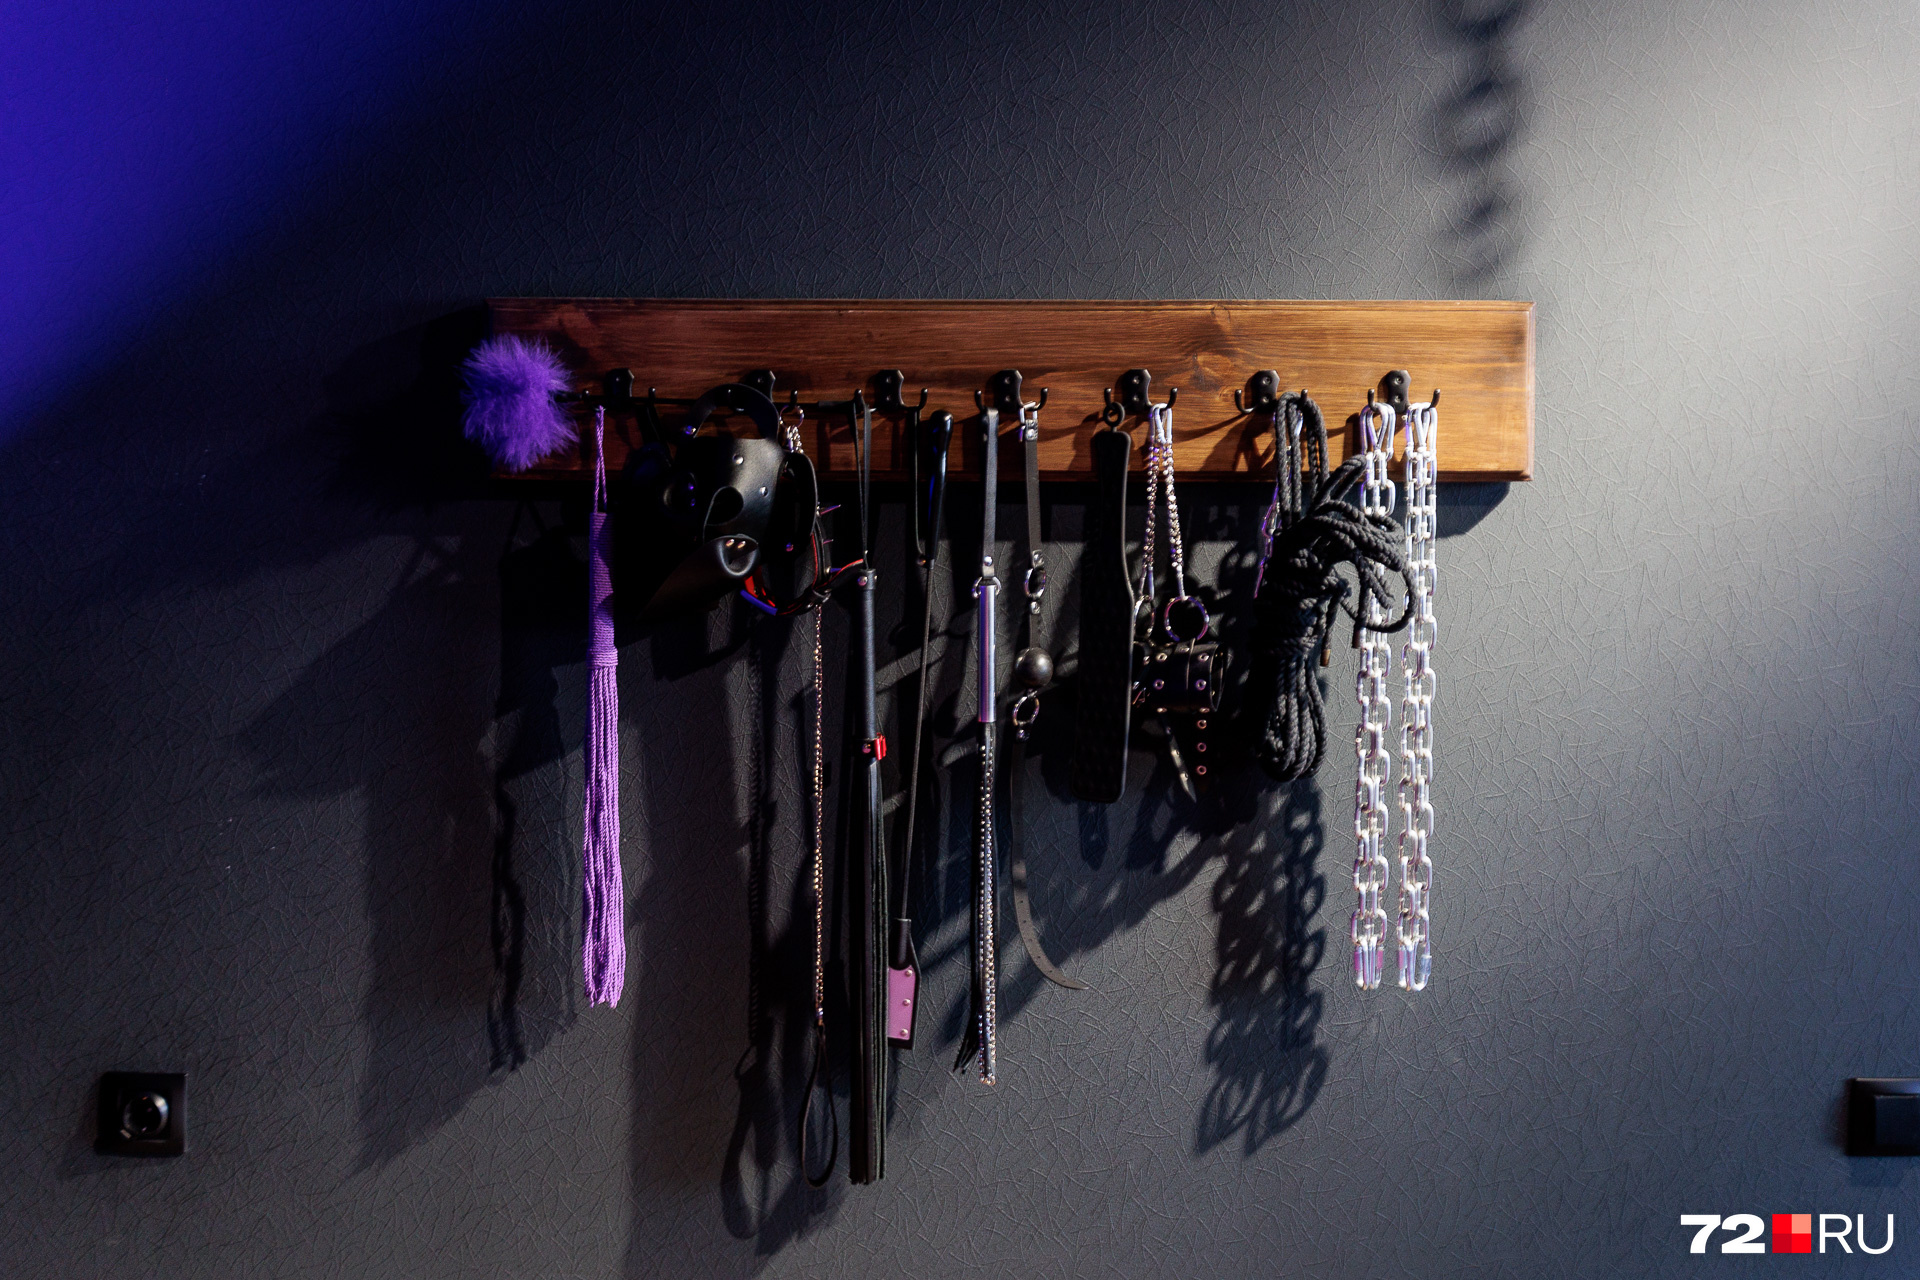 Из сексуальных атрибутов здесь есть наручники, кляпы, веревки, цепи, кисточки и плети. Всё это можно использовать для фото и не только